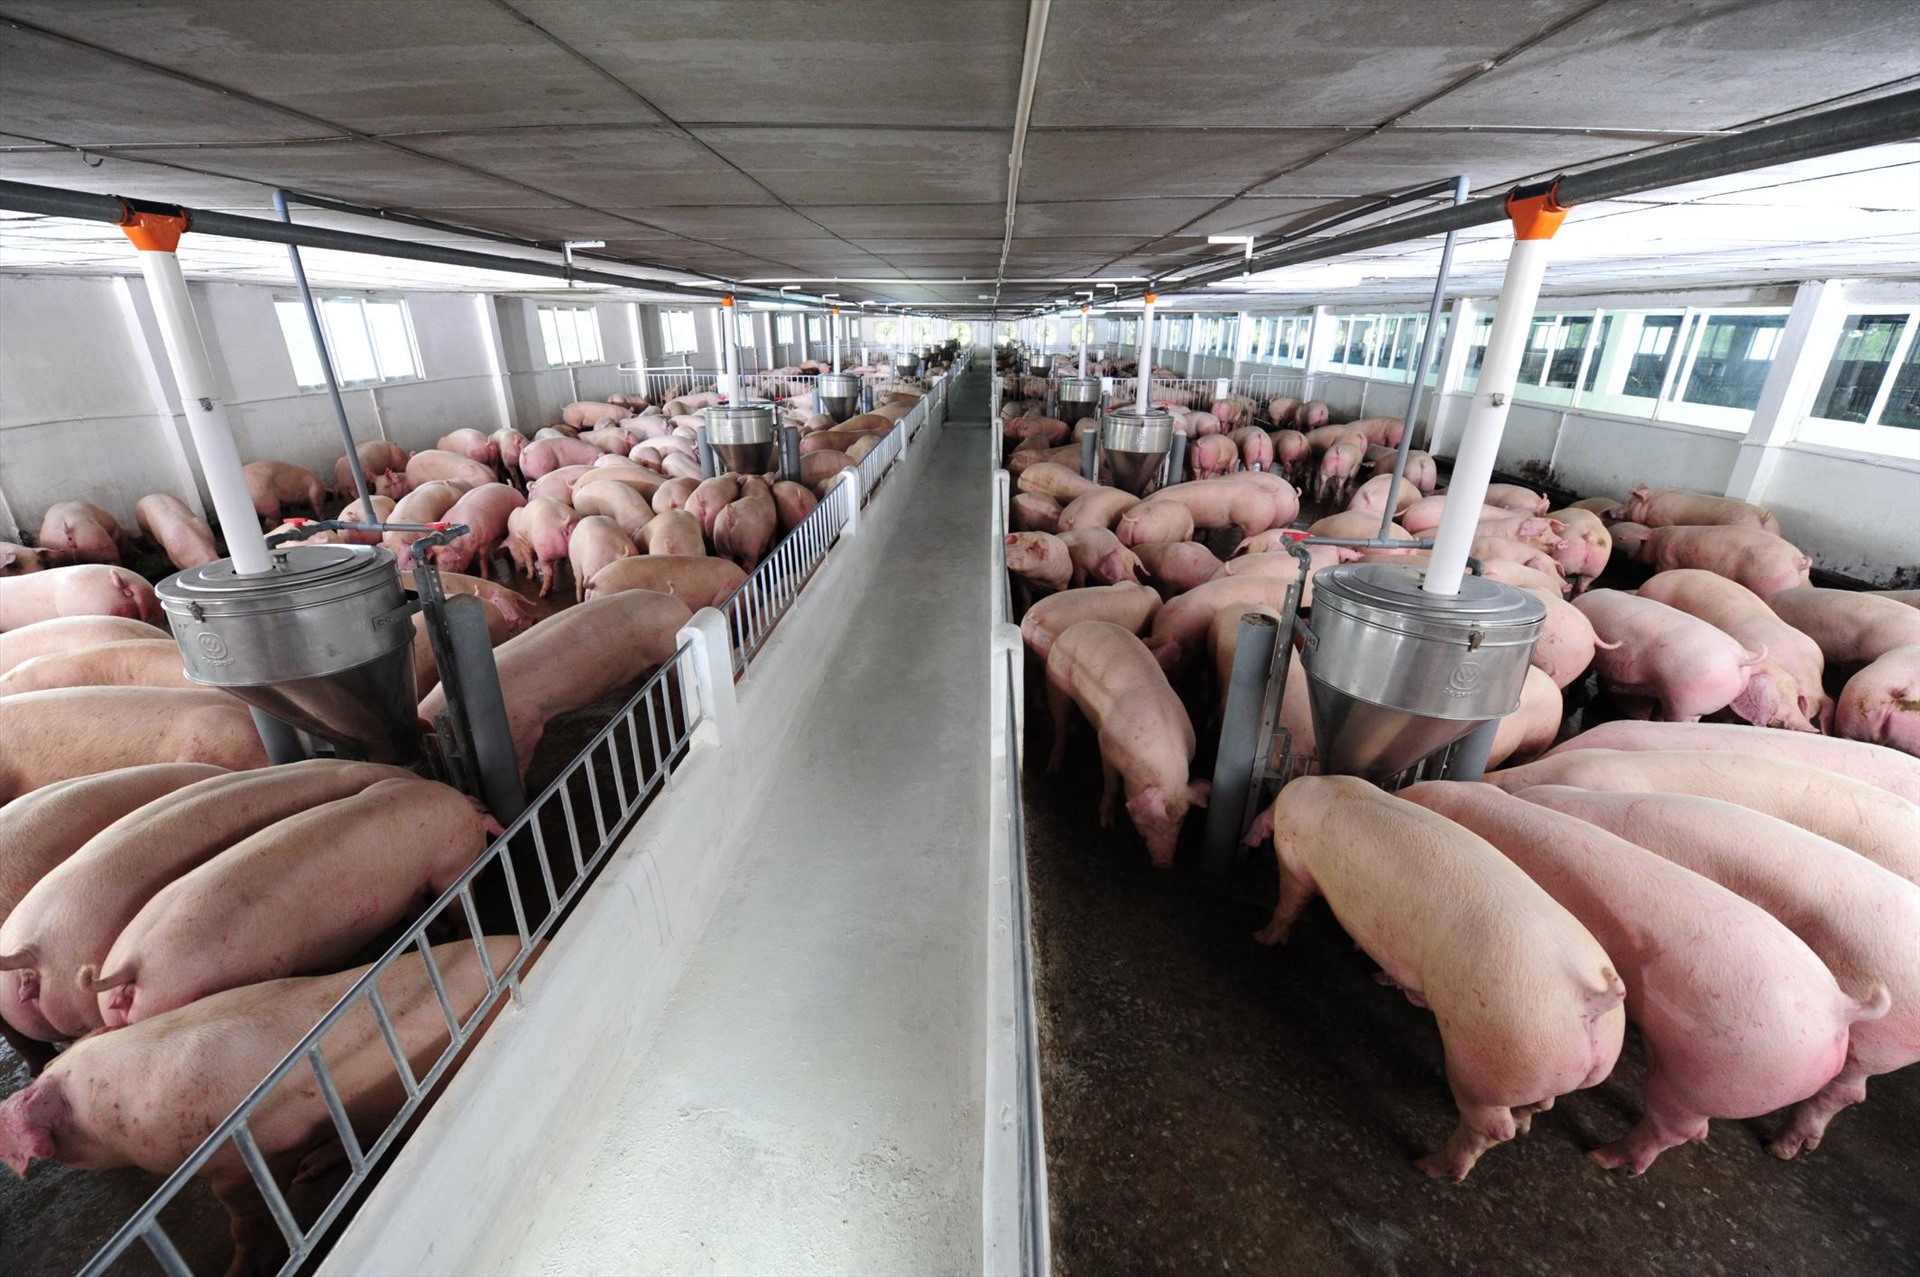 Nhập khẩu lợn sống phải tuân thủ quy định kiểm dịch để bảo vệ đàn lợn trong nước. Ảnh: Khánh Vũ